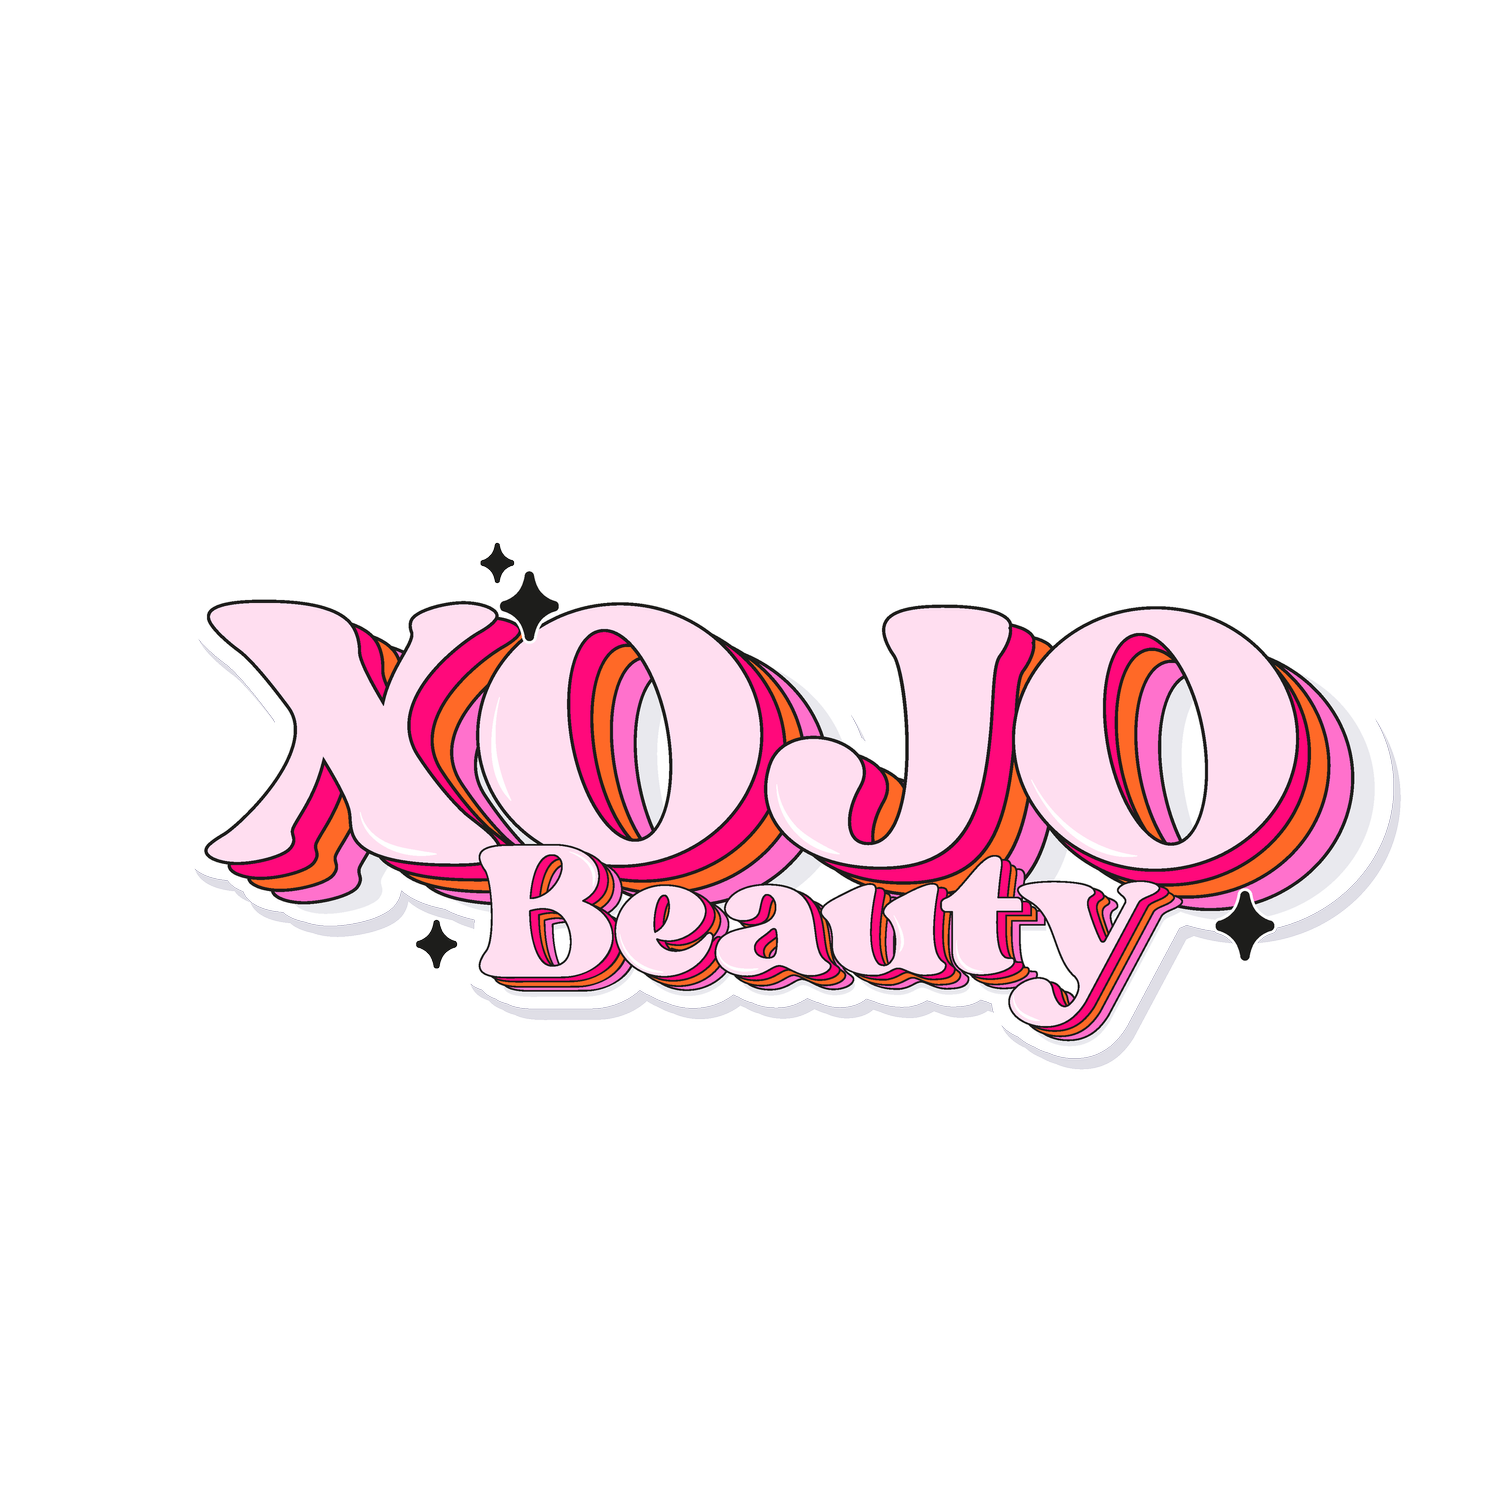 XOJO Beauty 